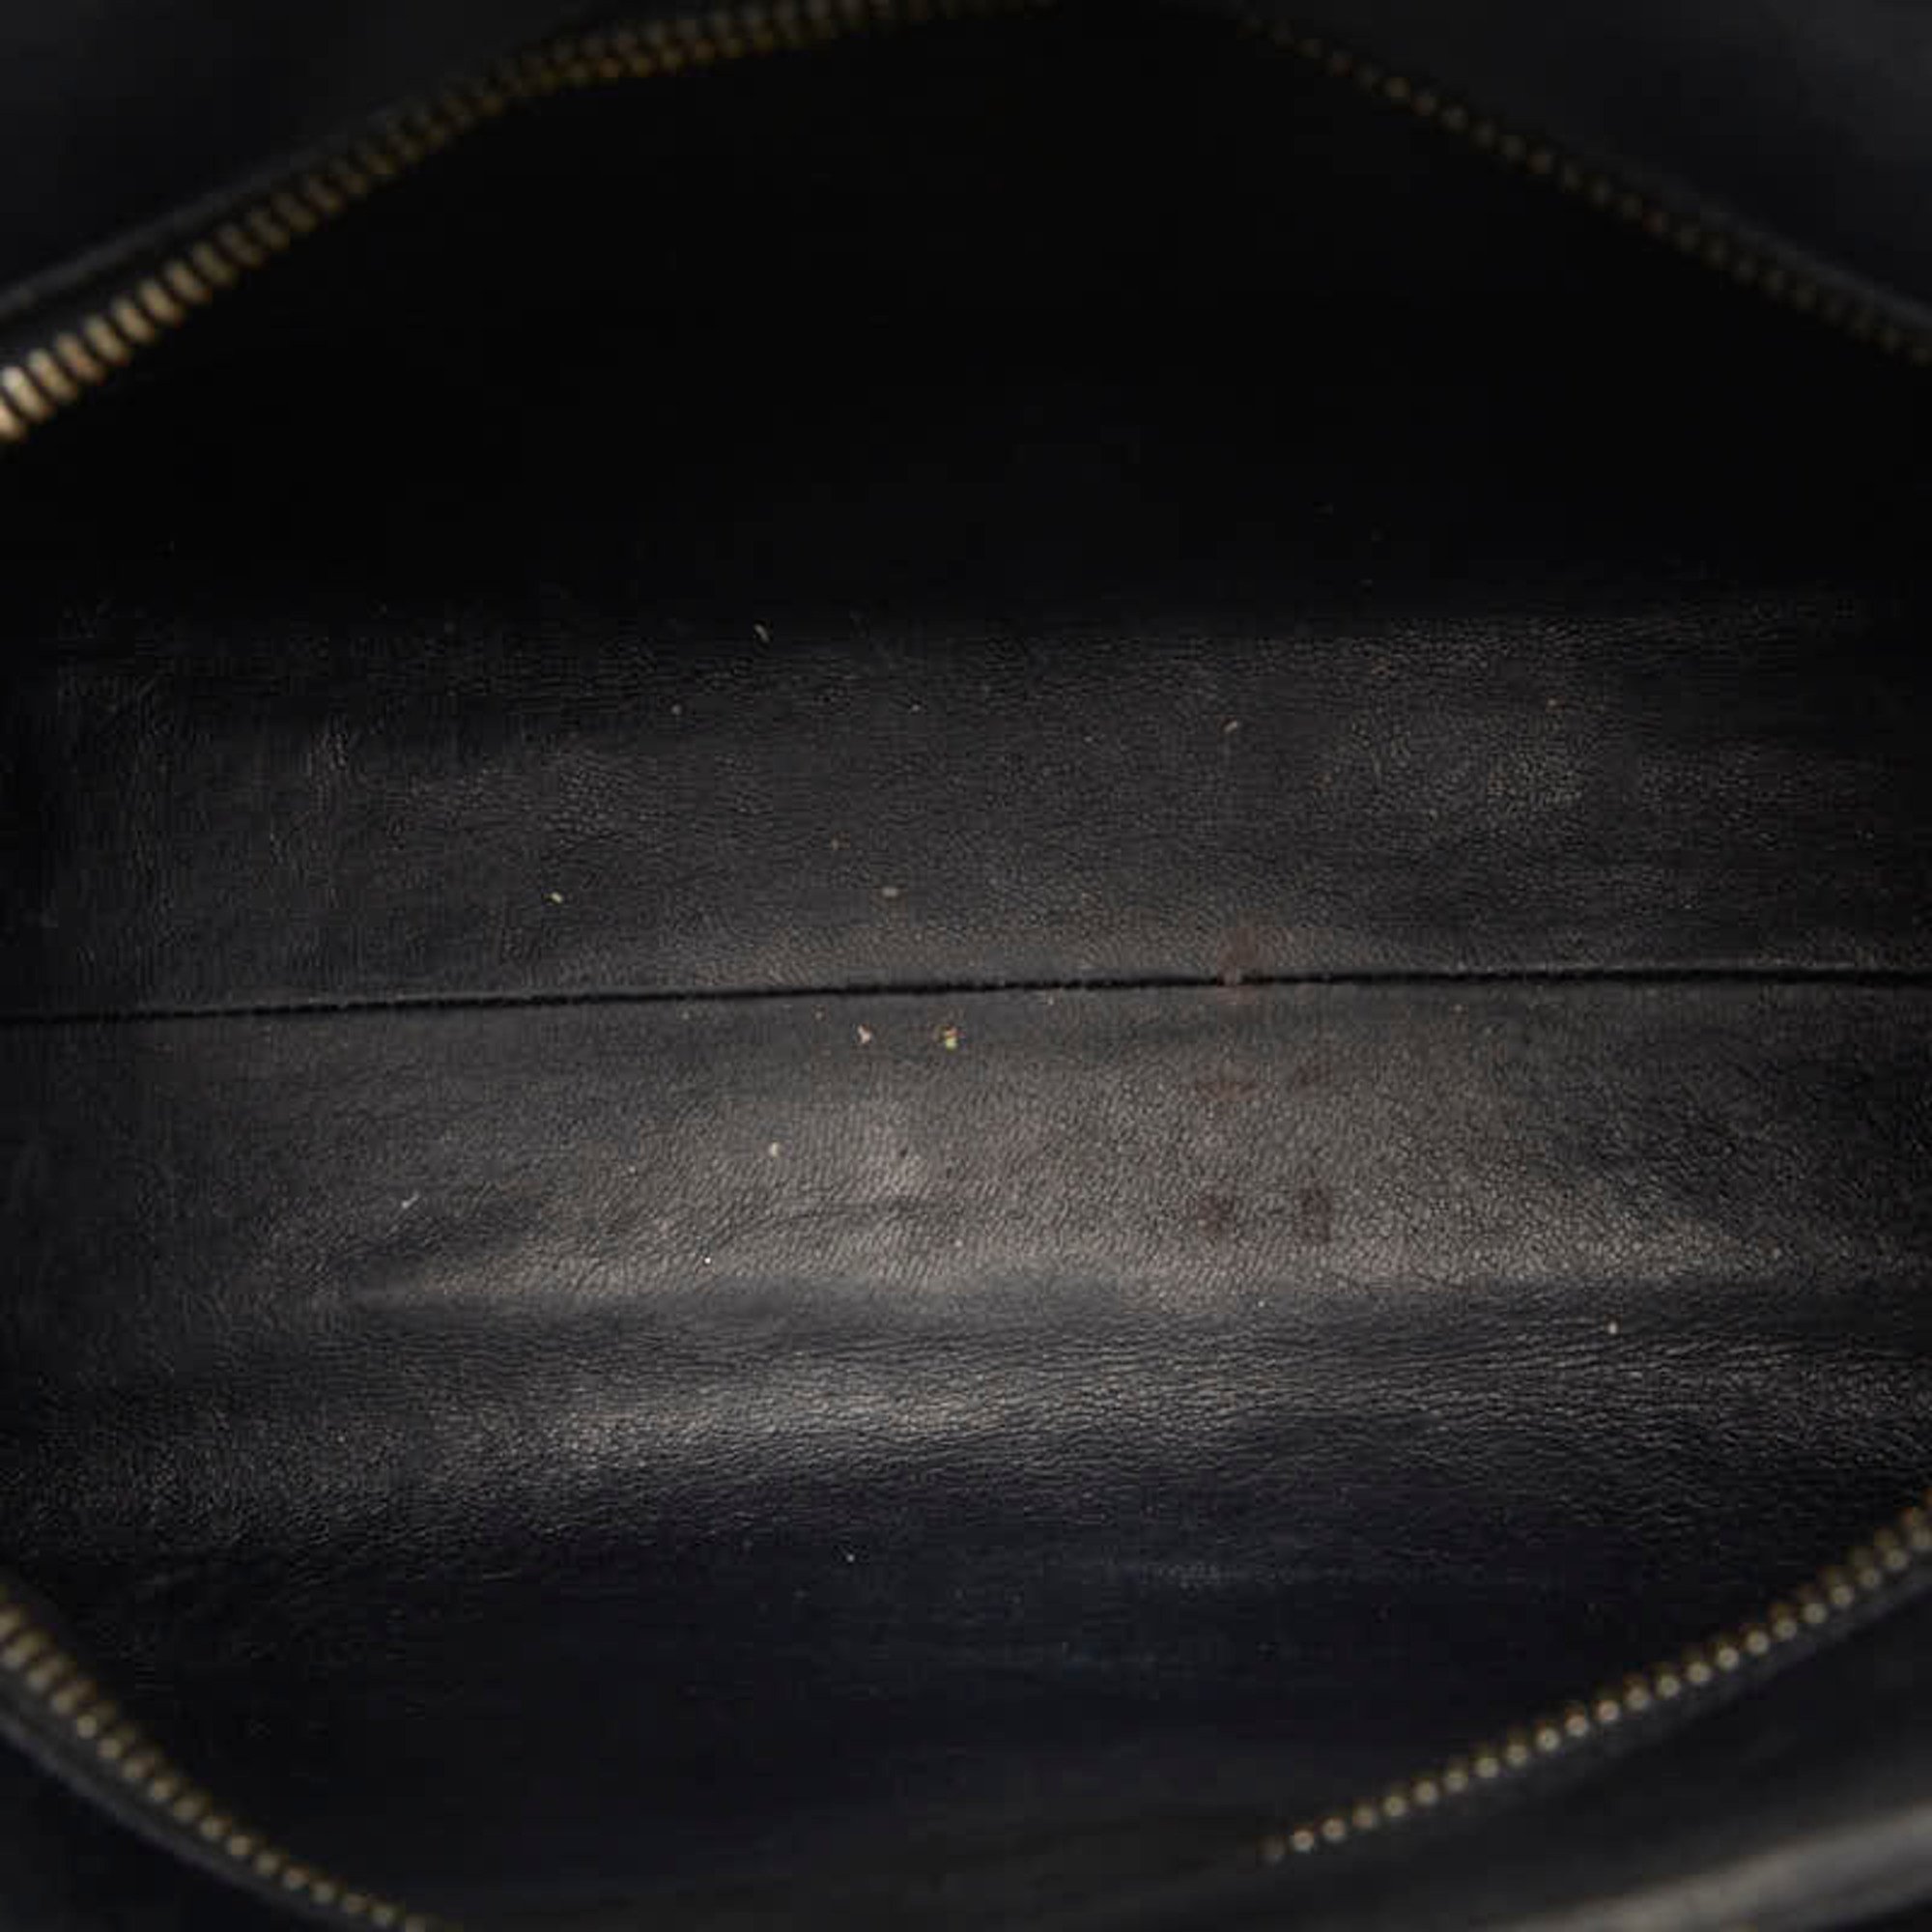 Saint Laurent Baby Cabas Handbag Shoulder Bag 472466 Black Leather Women's SAINT LAURENT